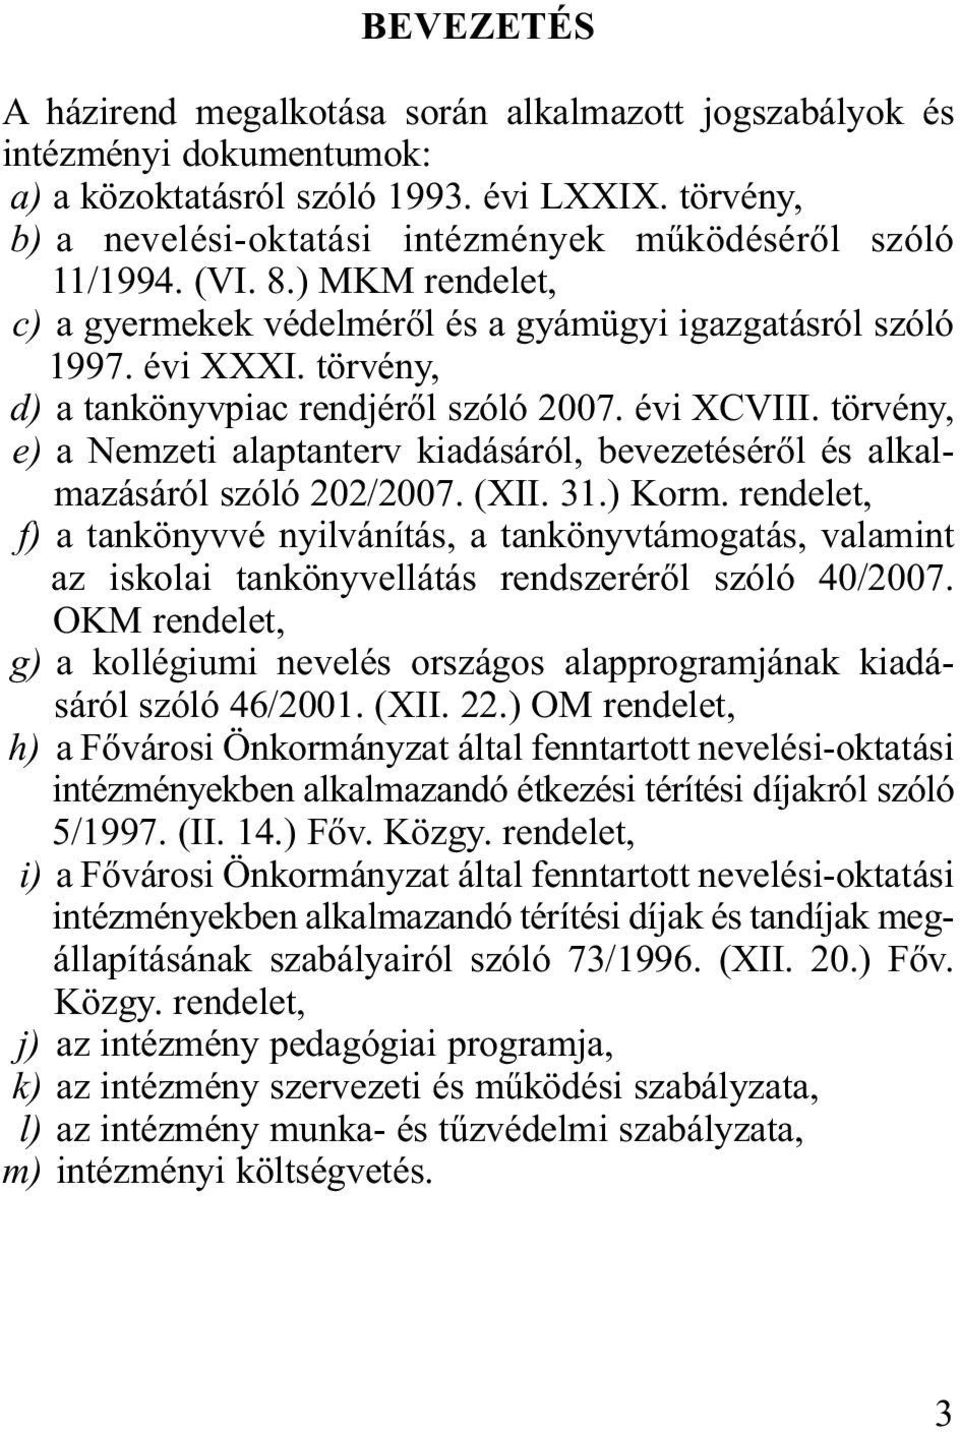 törvény, d) a tankönyvpiac rendjéről szóló 2007. évi XCVIII. törvény, e) a Nemzeti alaptanterv kiadásáról, bevezetéséről és alkalmazásáról szóló 202/2007. (XII. 31.) Korm.